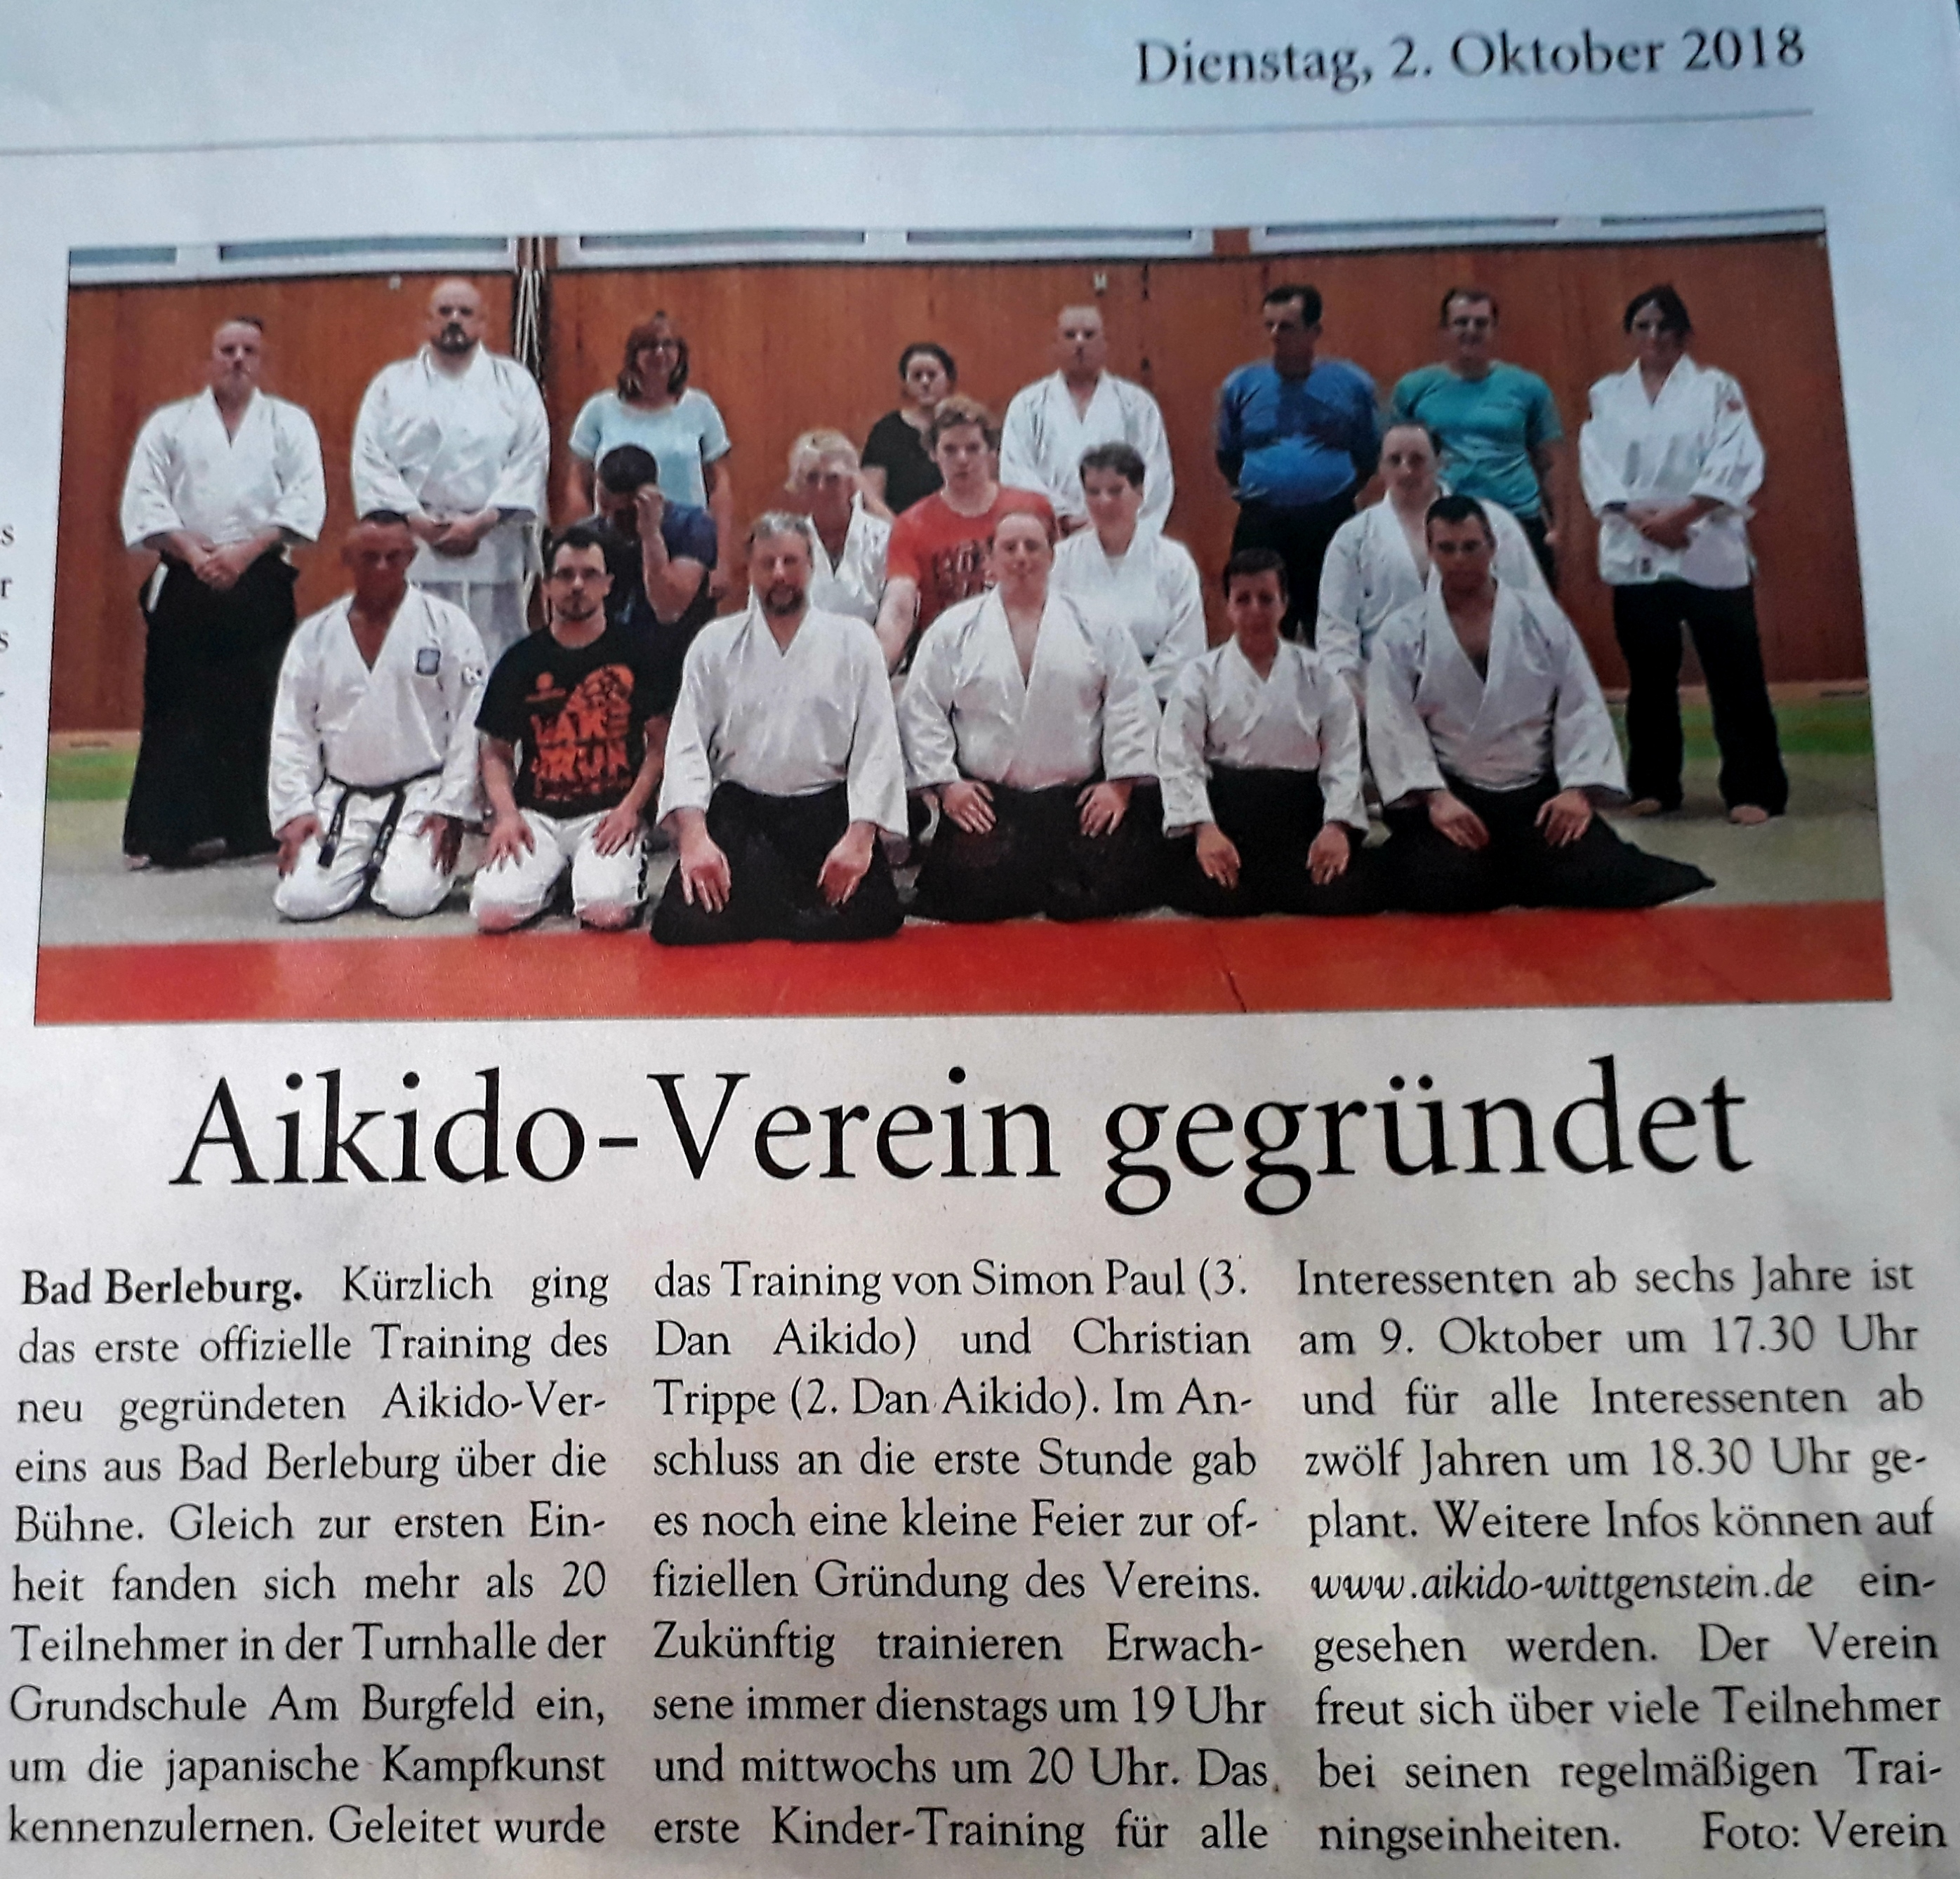 Aikido-Verein-gegründet